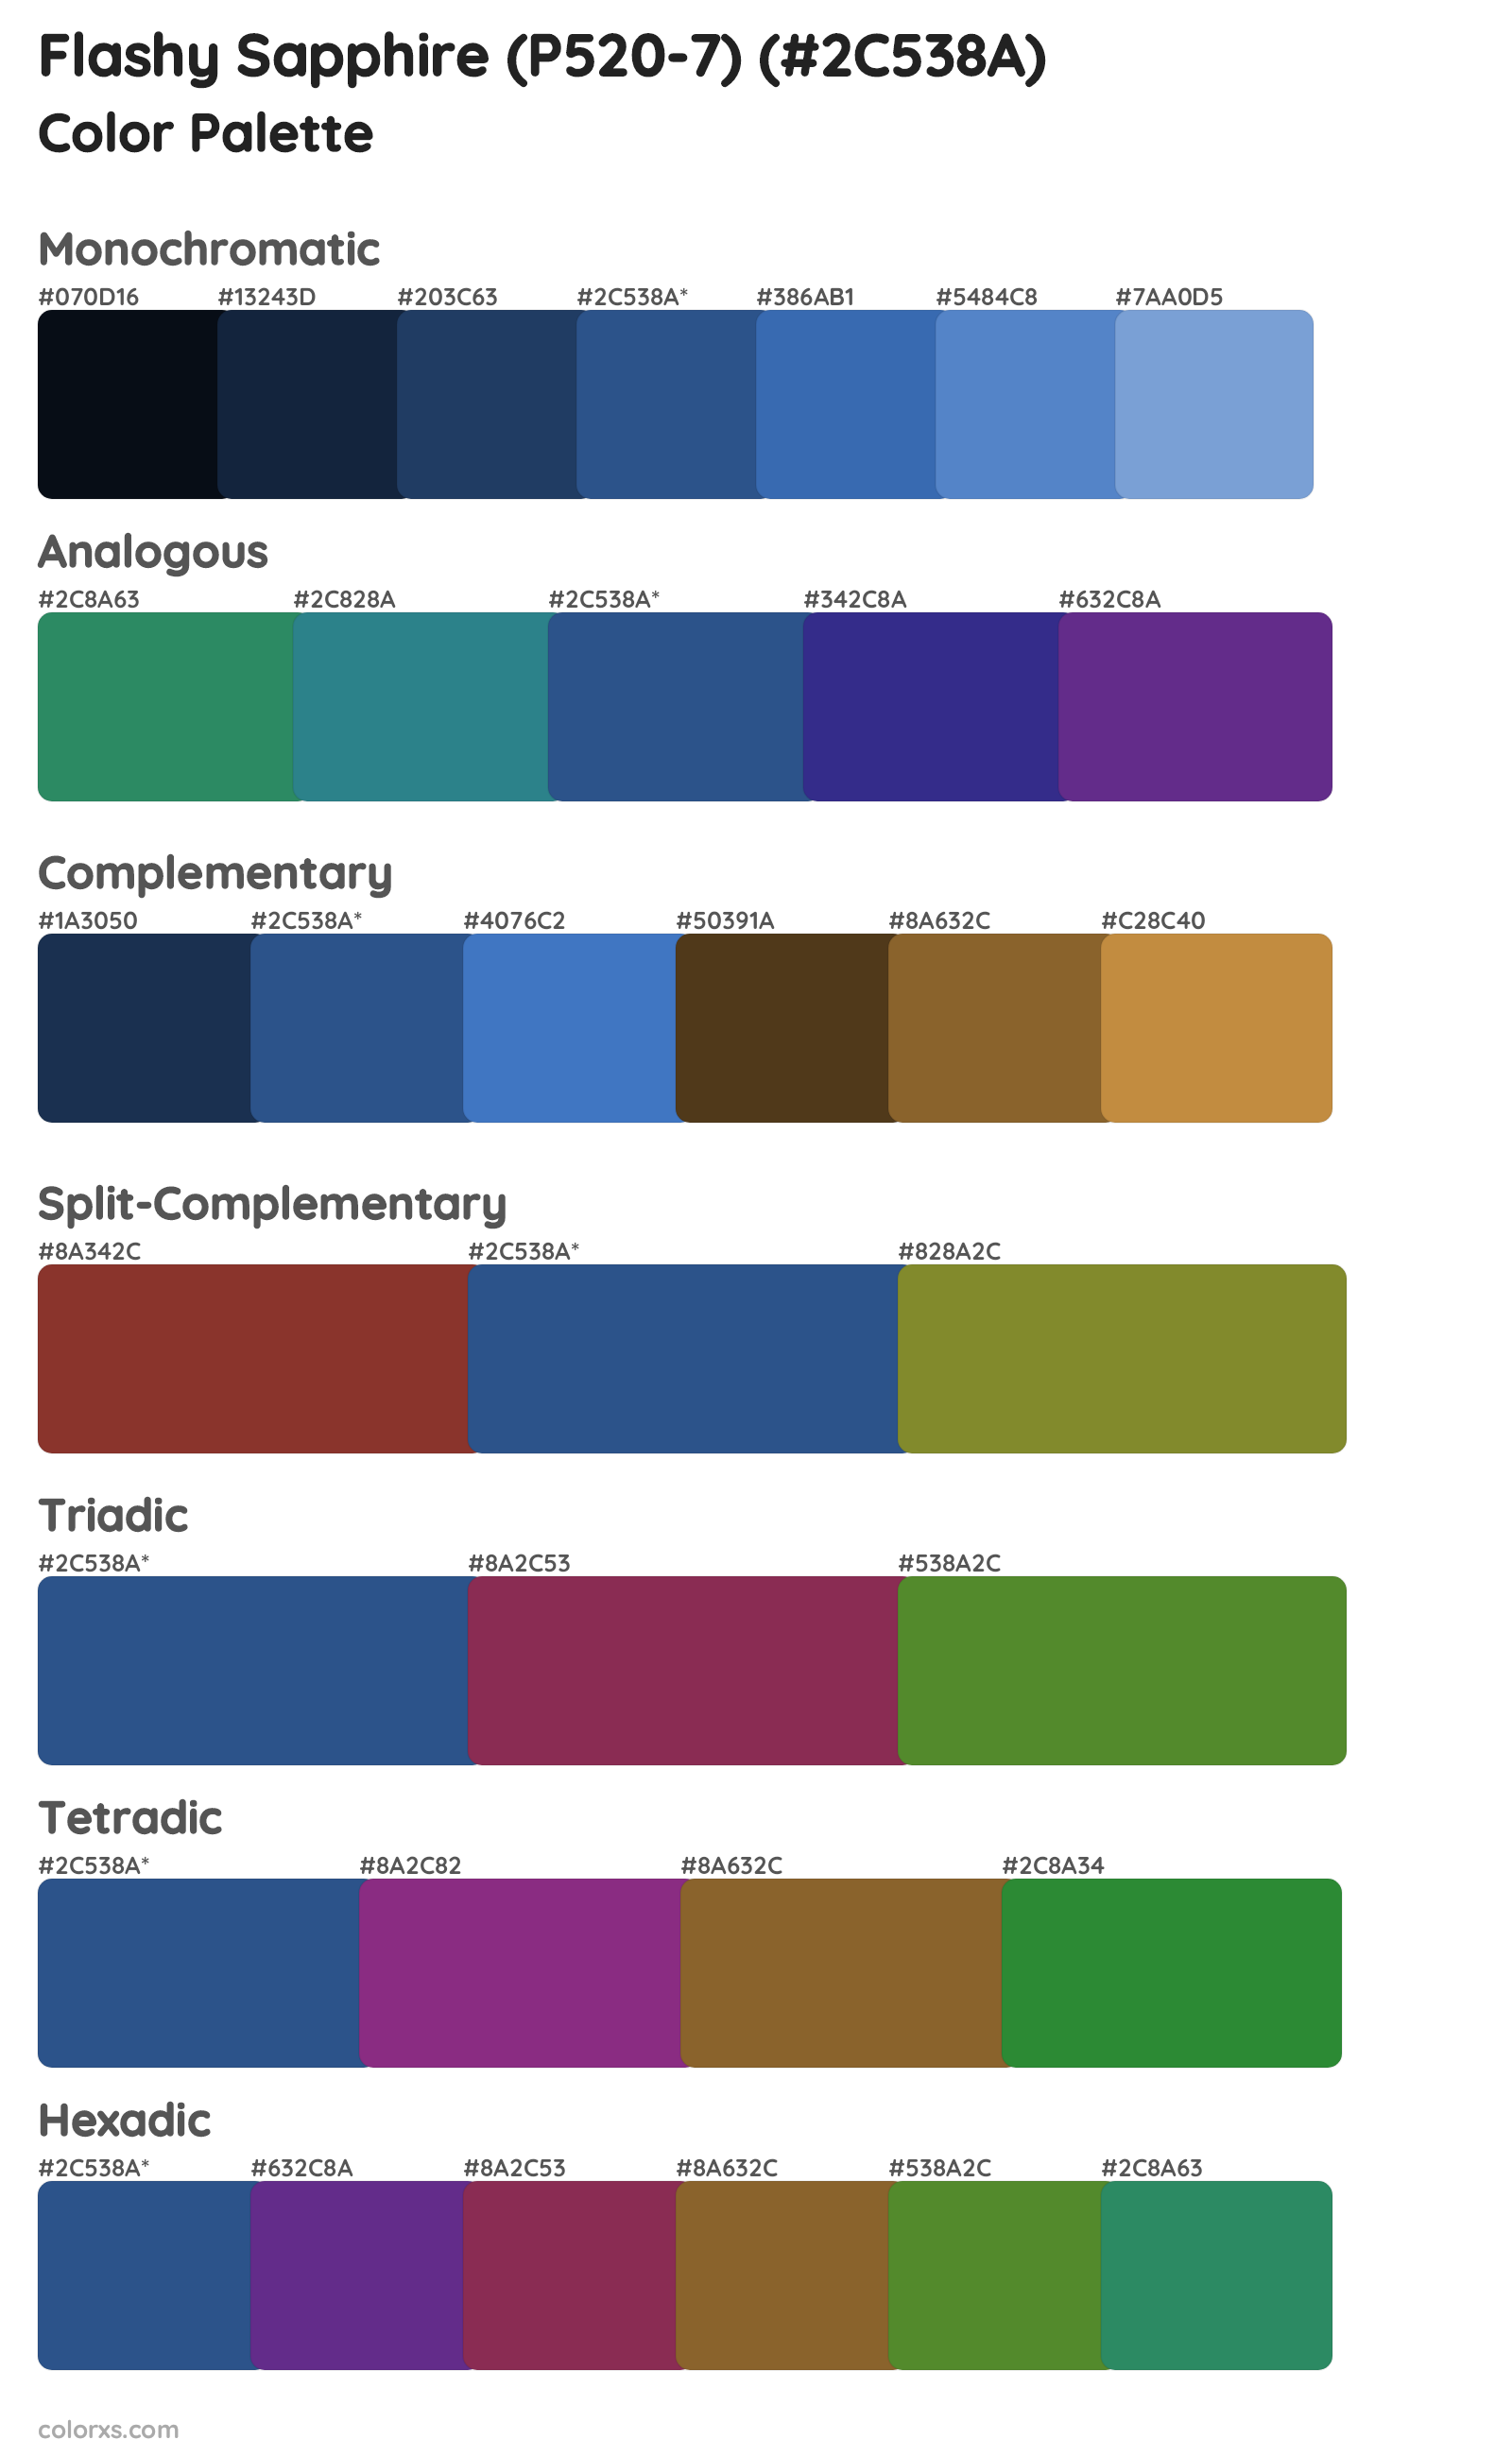 Flashy Sapphire (P520-7) Color Scheme Palettes